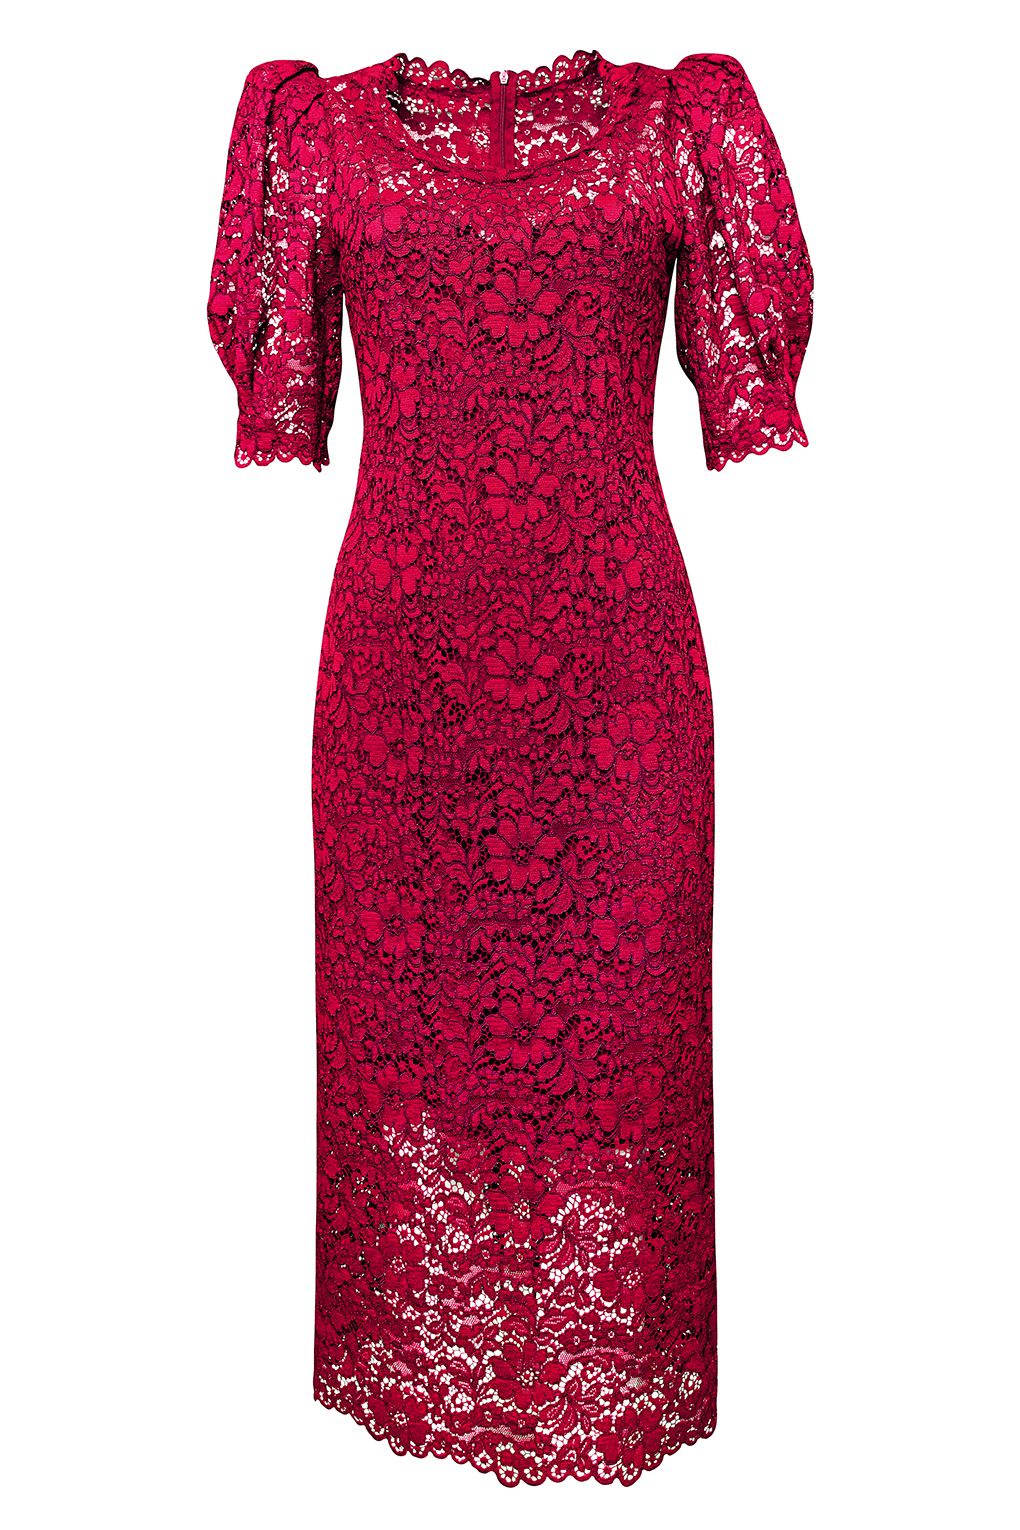 фото Платье женское paola ray pr121-3025 красное xs